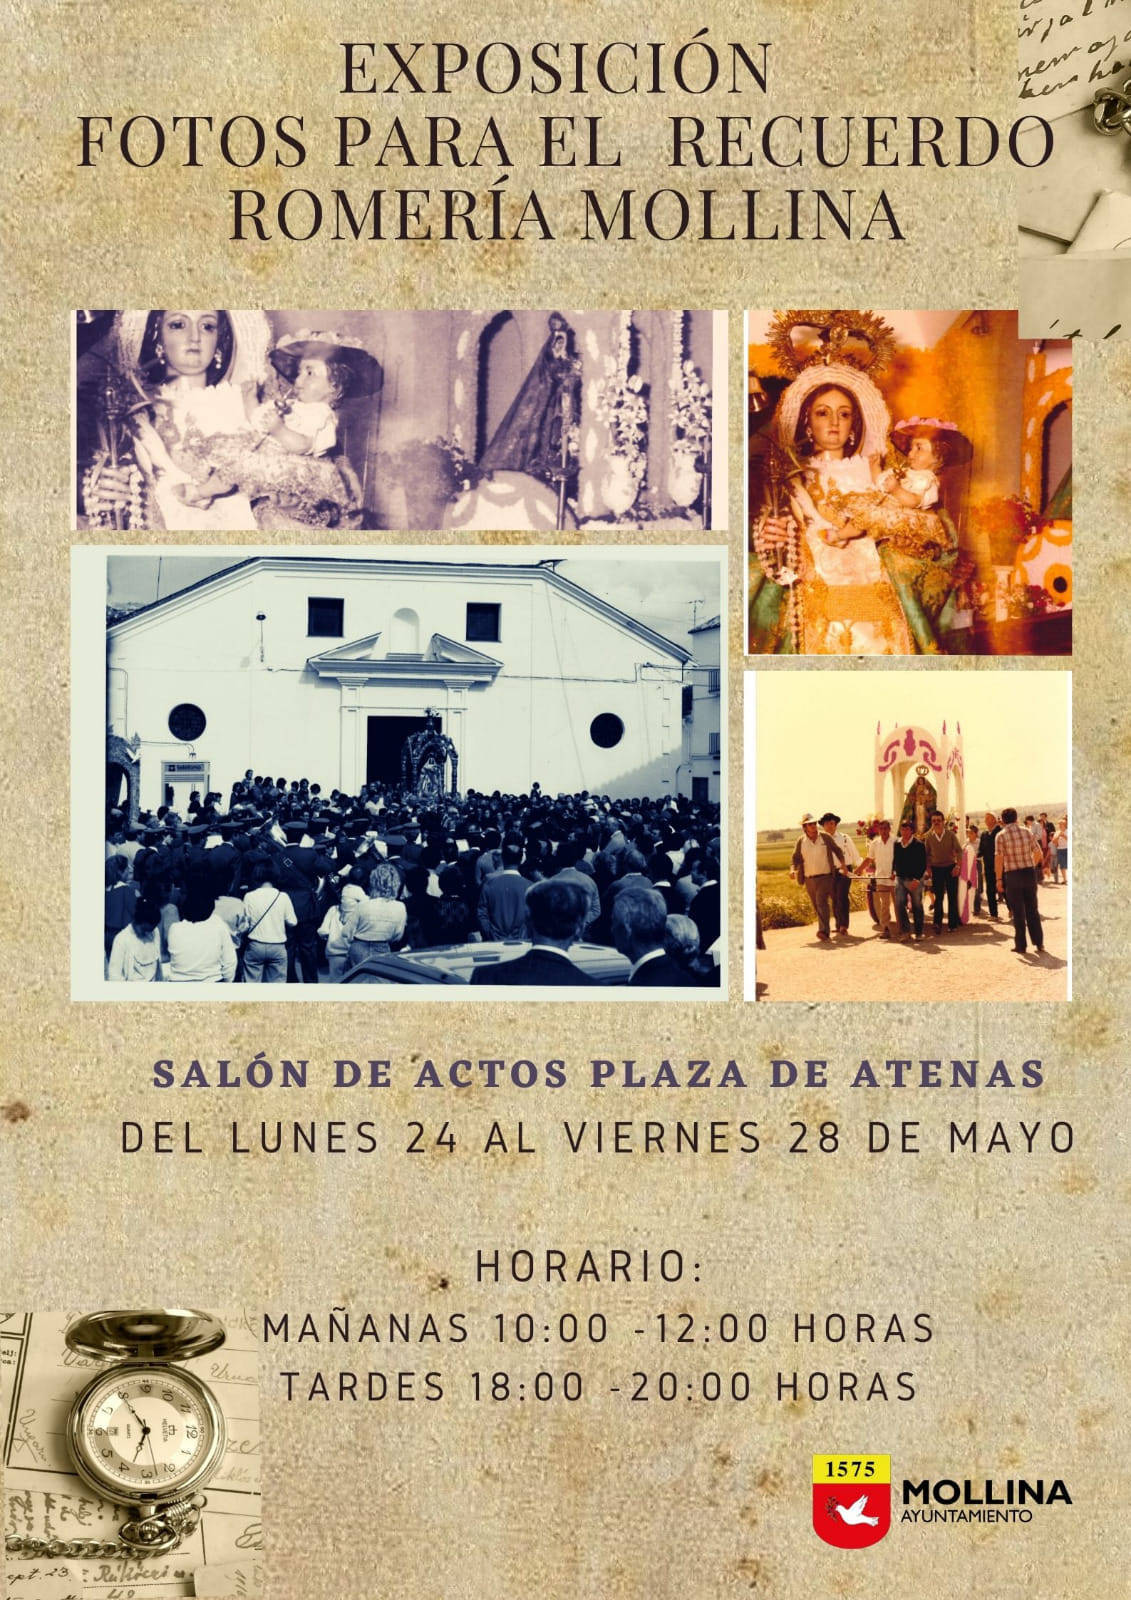 Exposición de fotos para el recuerdo de la romería (2021) - Mollina (Málaga)